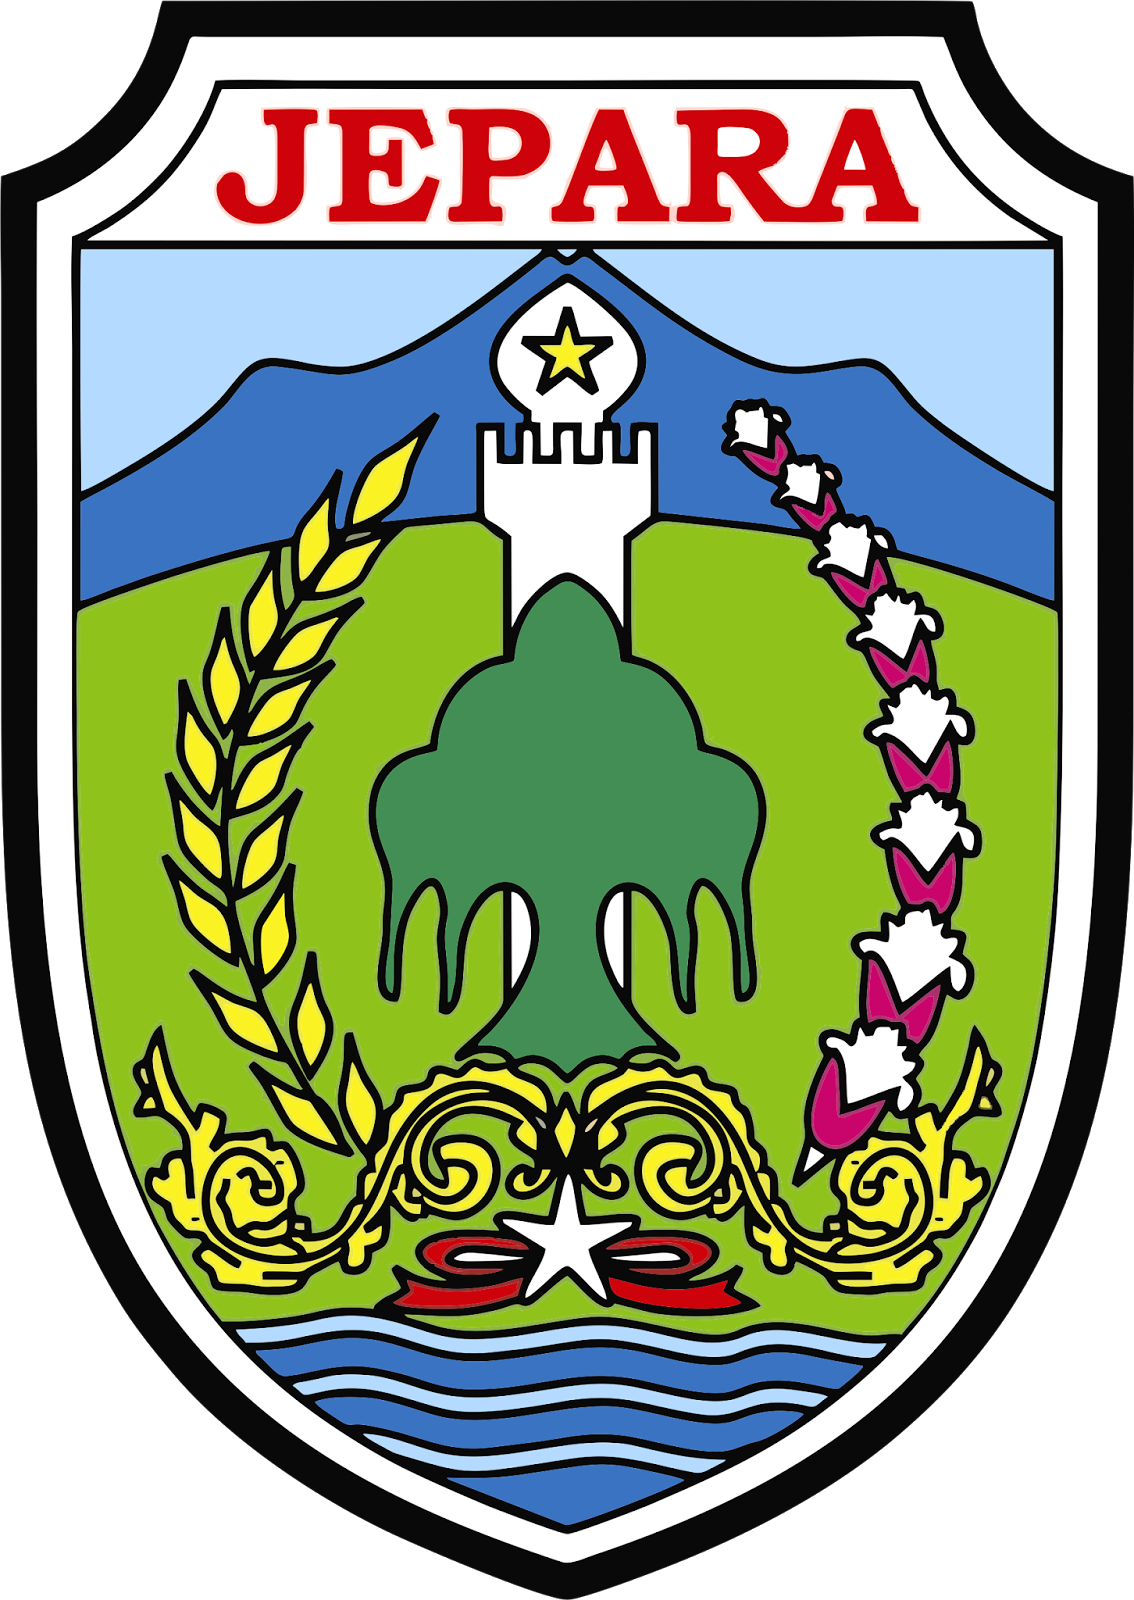 Desain Logo Kabupaten Jepara Jawa Tengah